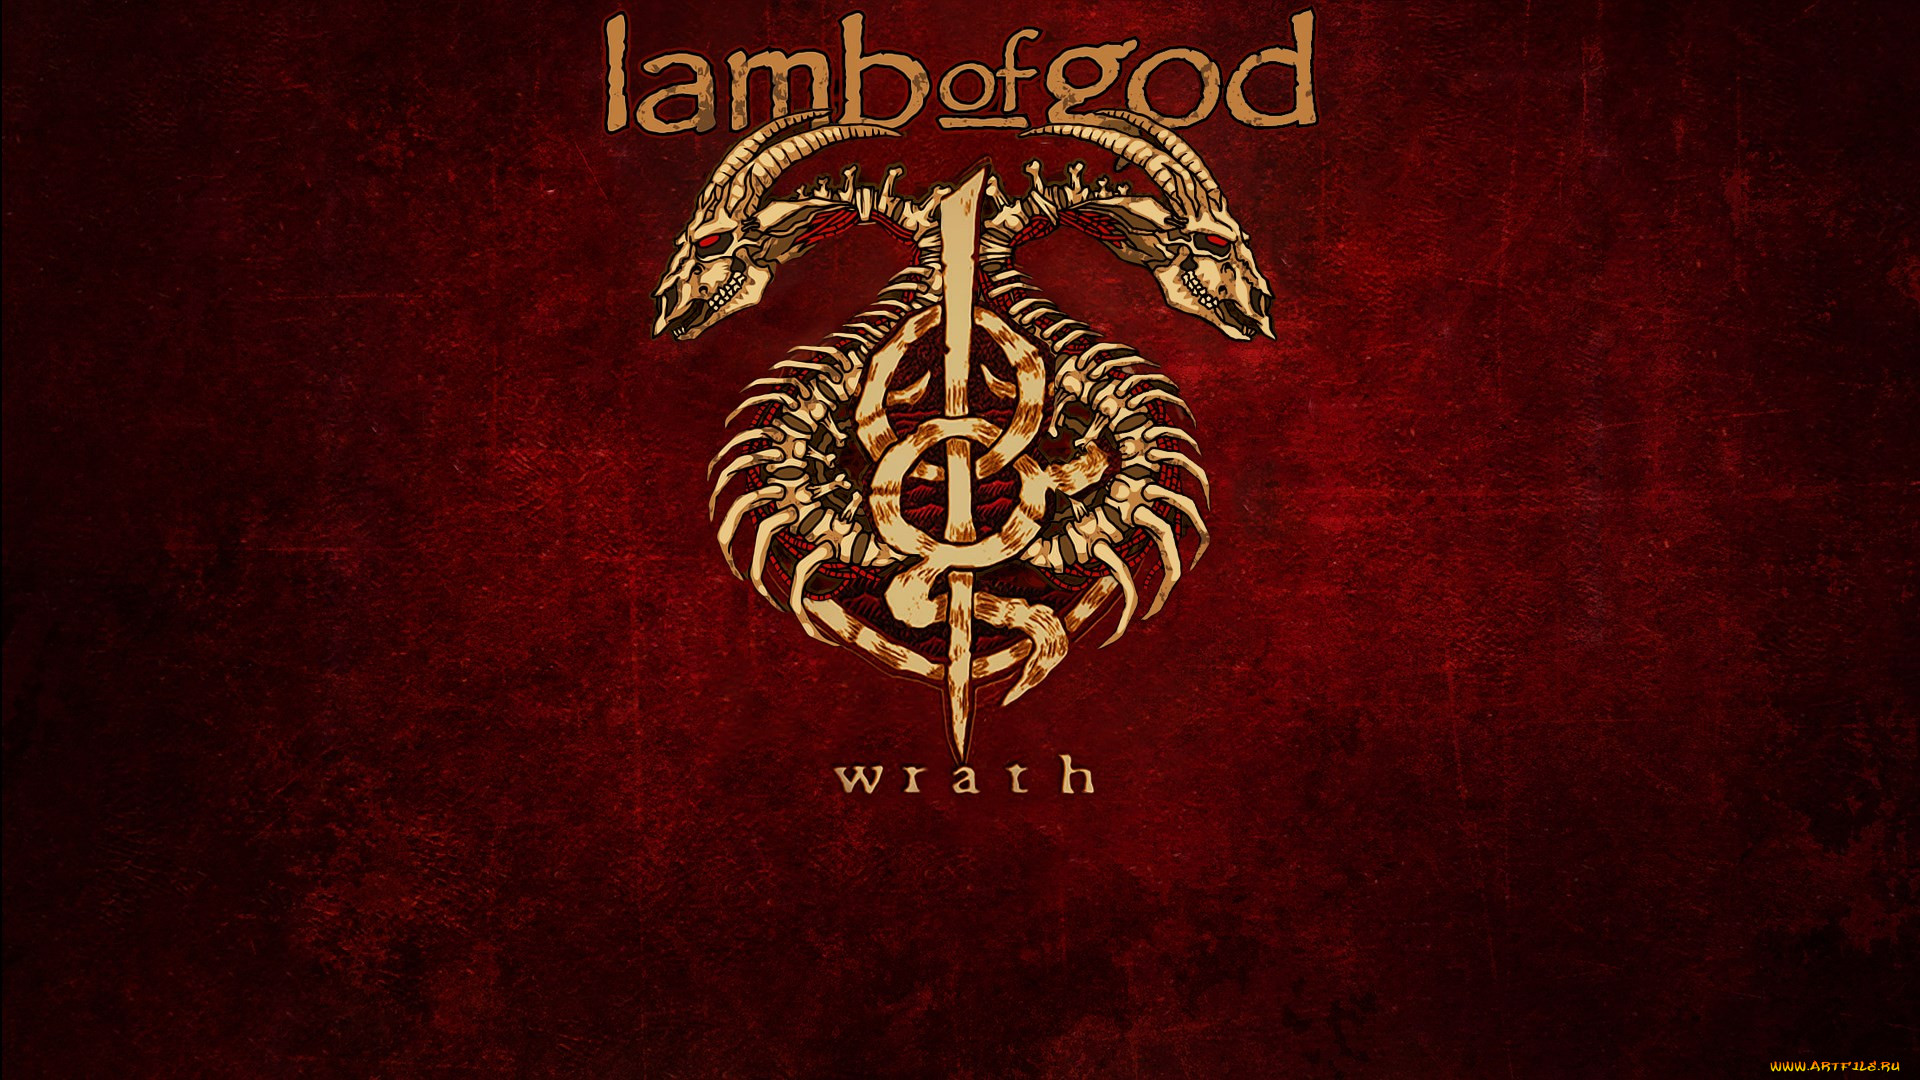 lamb-of-god, , lamb of god, 